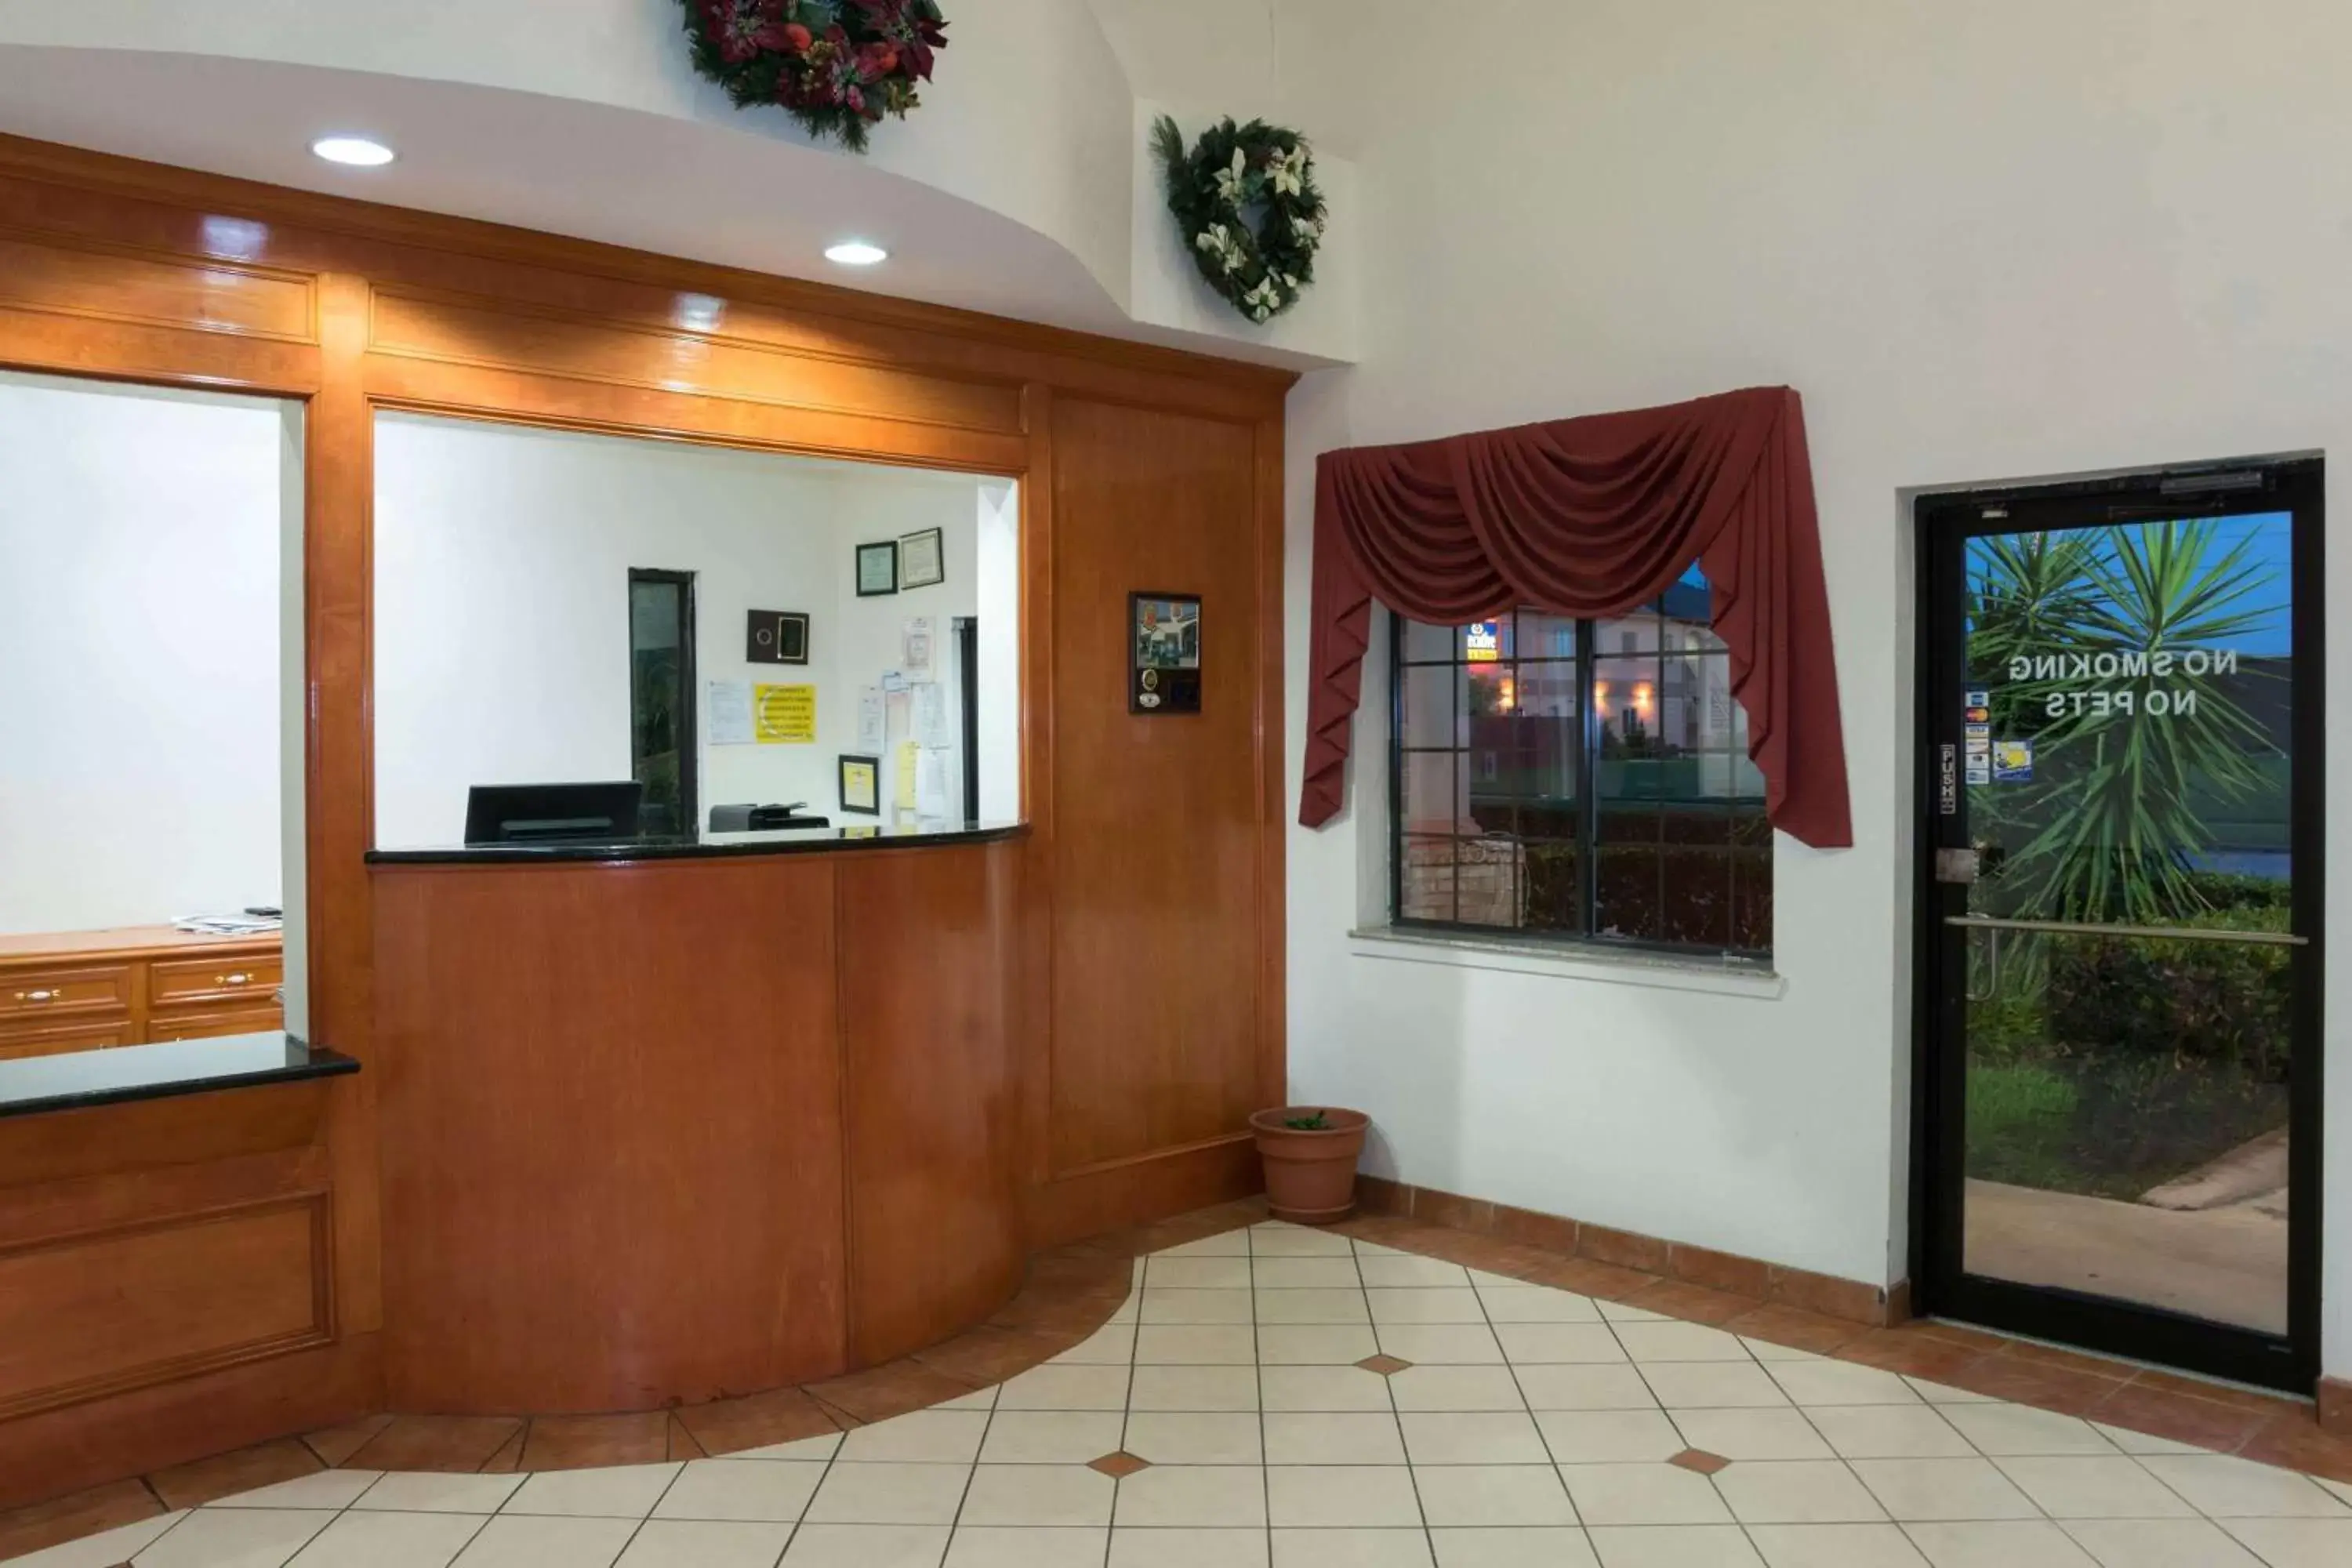 Lobby or reception, Lobby/Reception in Super 8 by Wyndham Stafford Sugarland Area